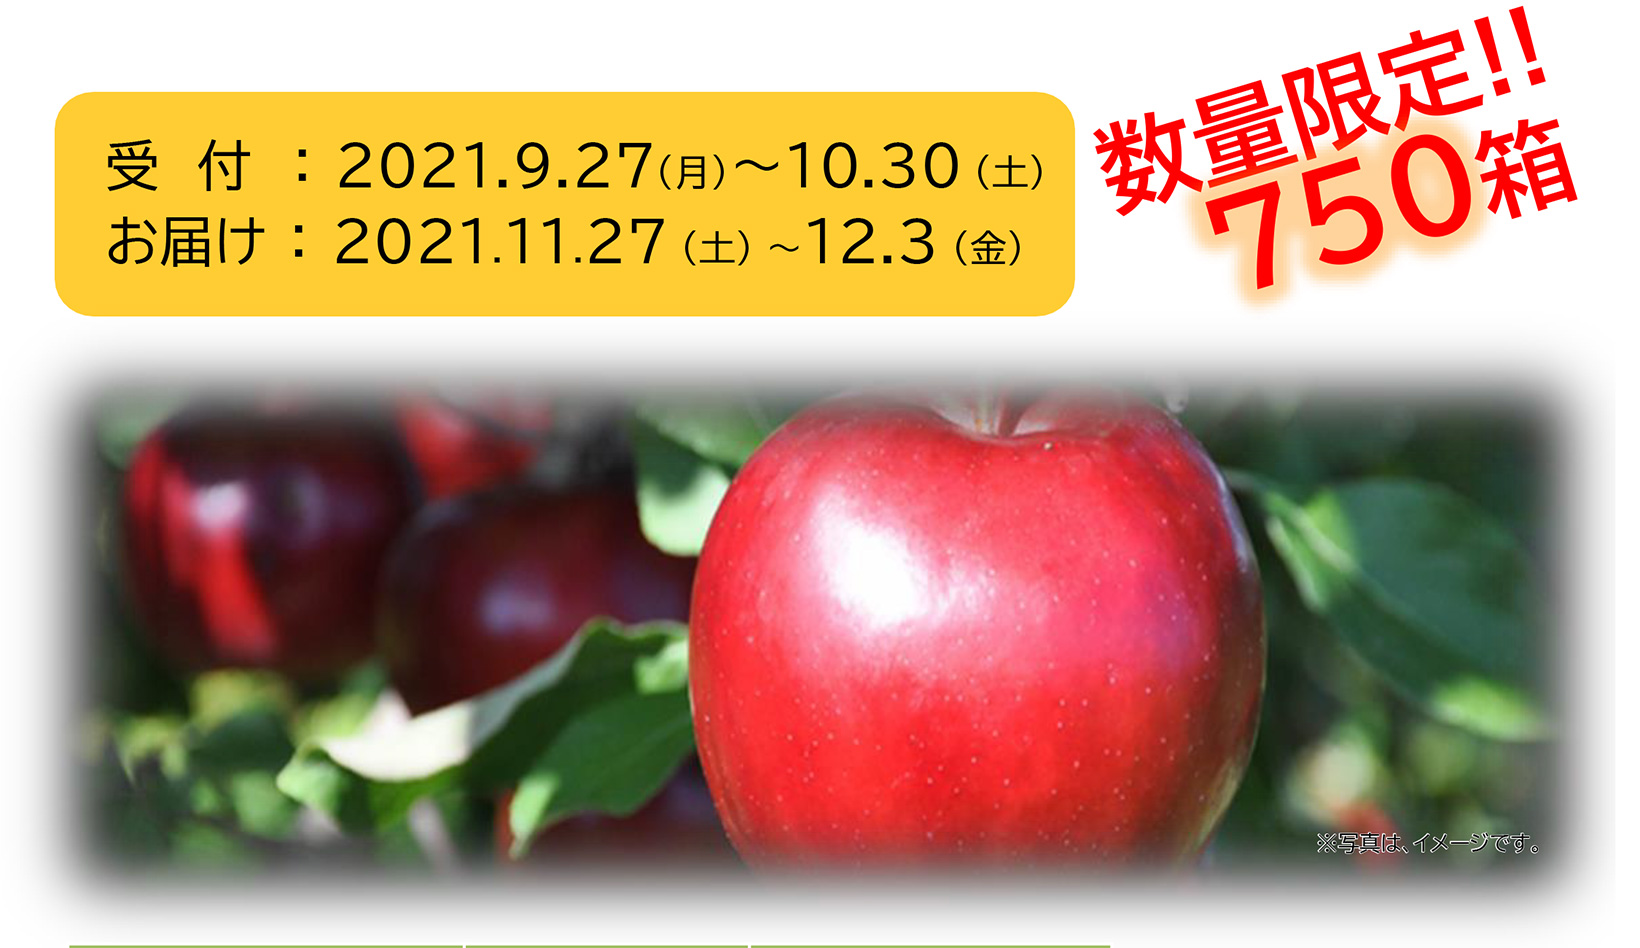 藤崎農場りんご・数量限定750箱